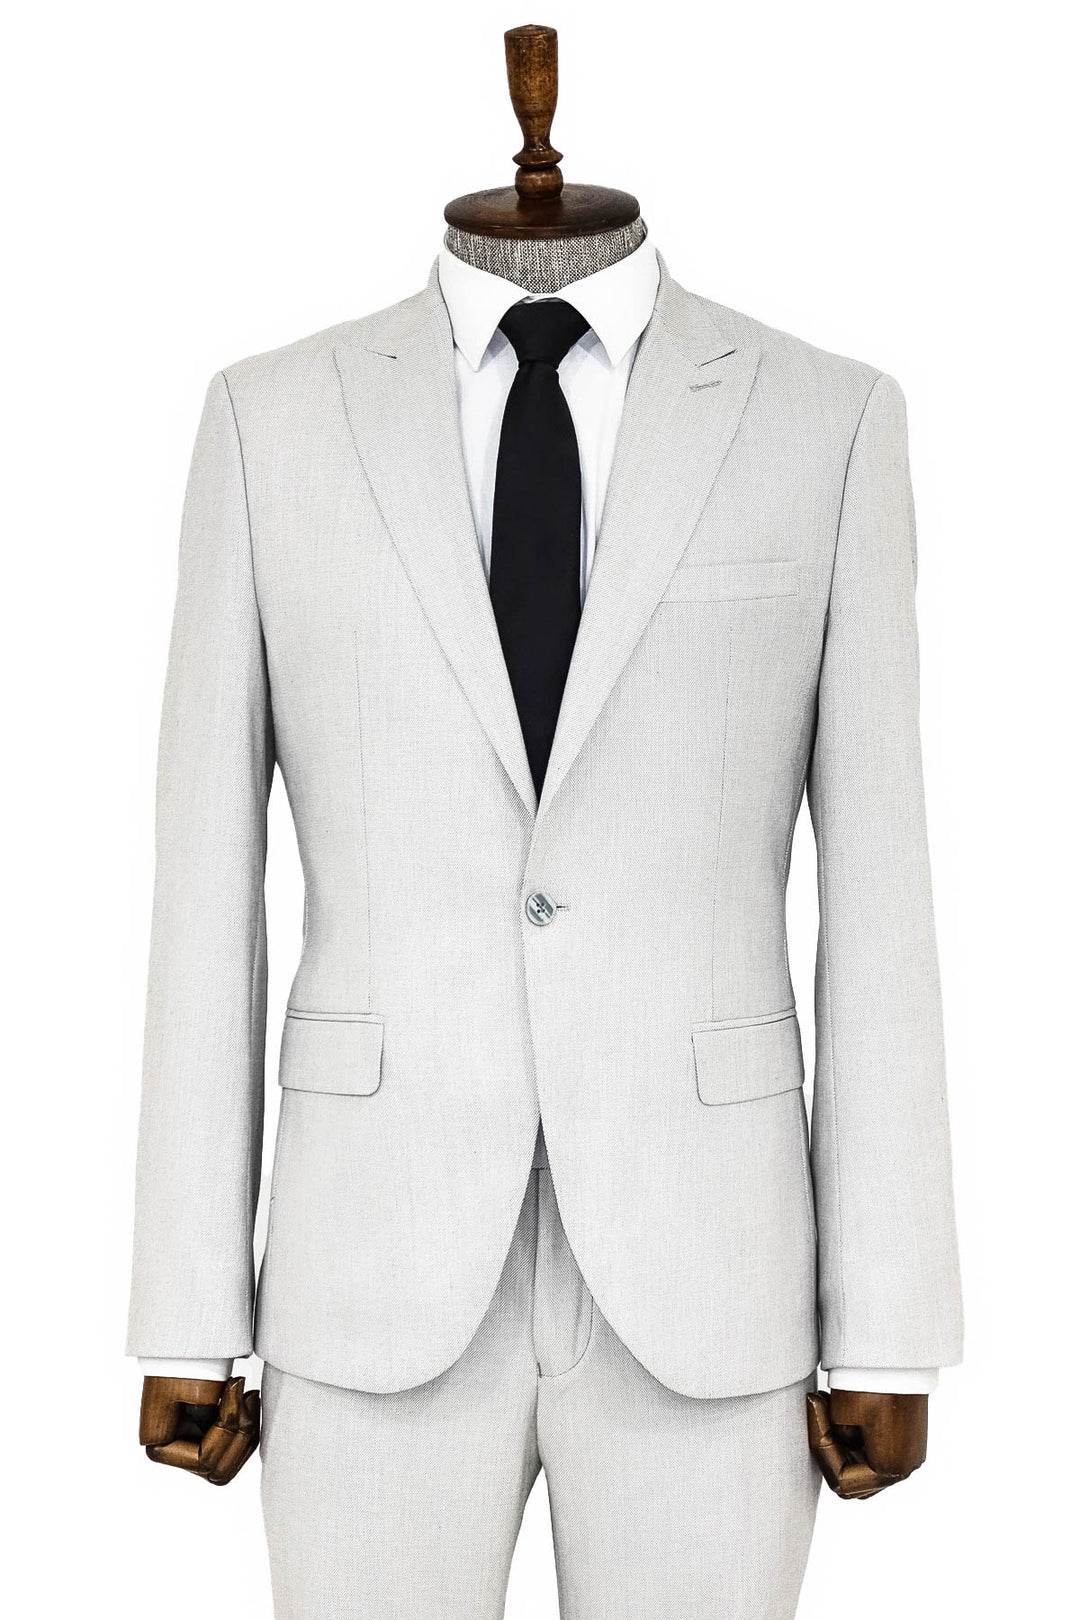 Plain 2 Piece Slim Fit Light Grey Men Suit - Wessi